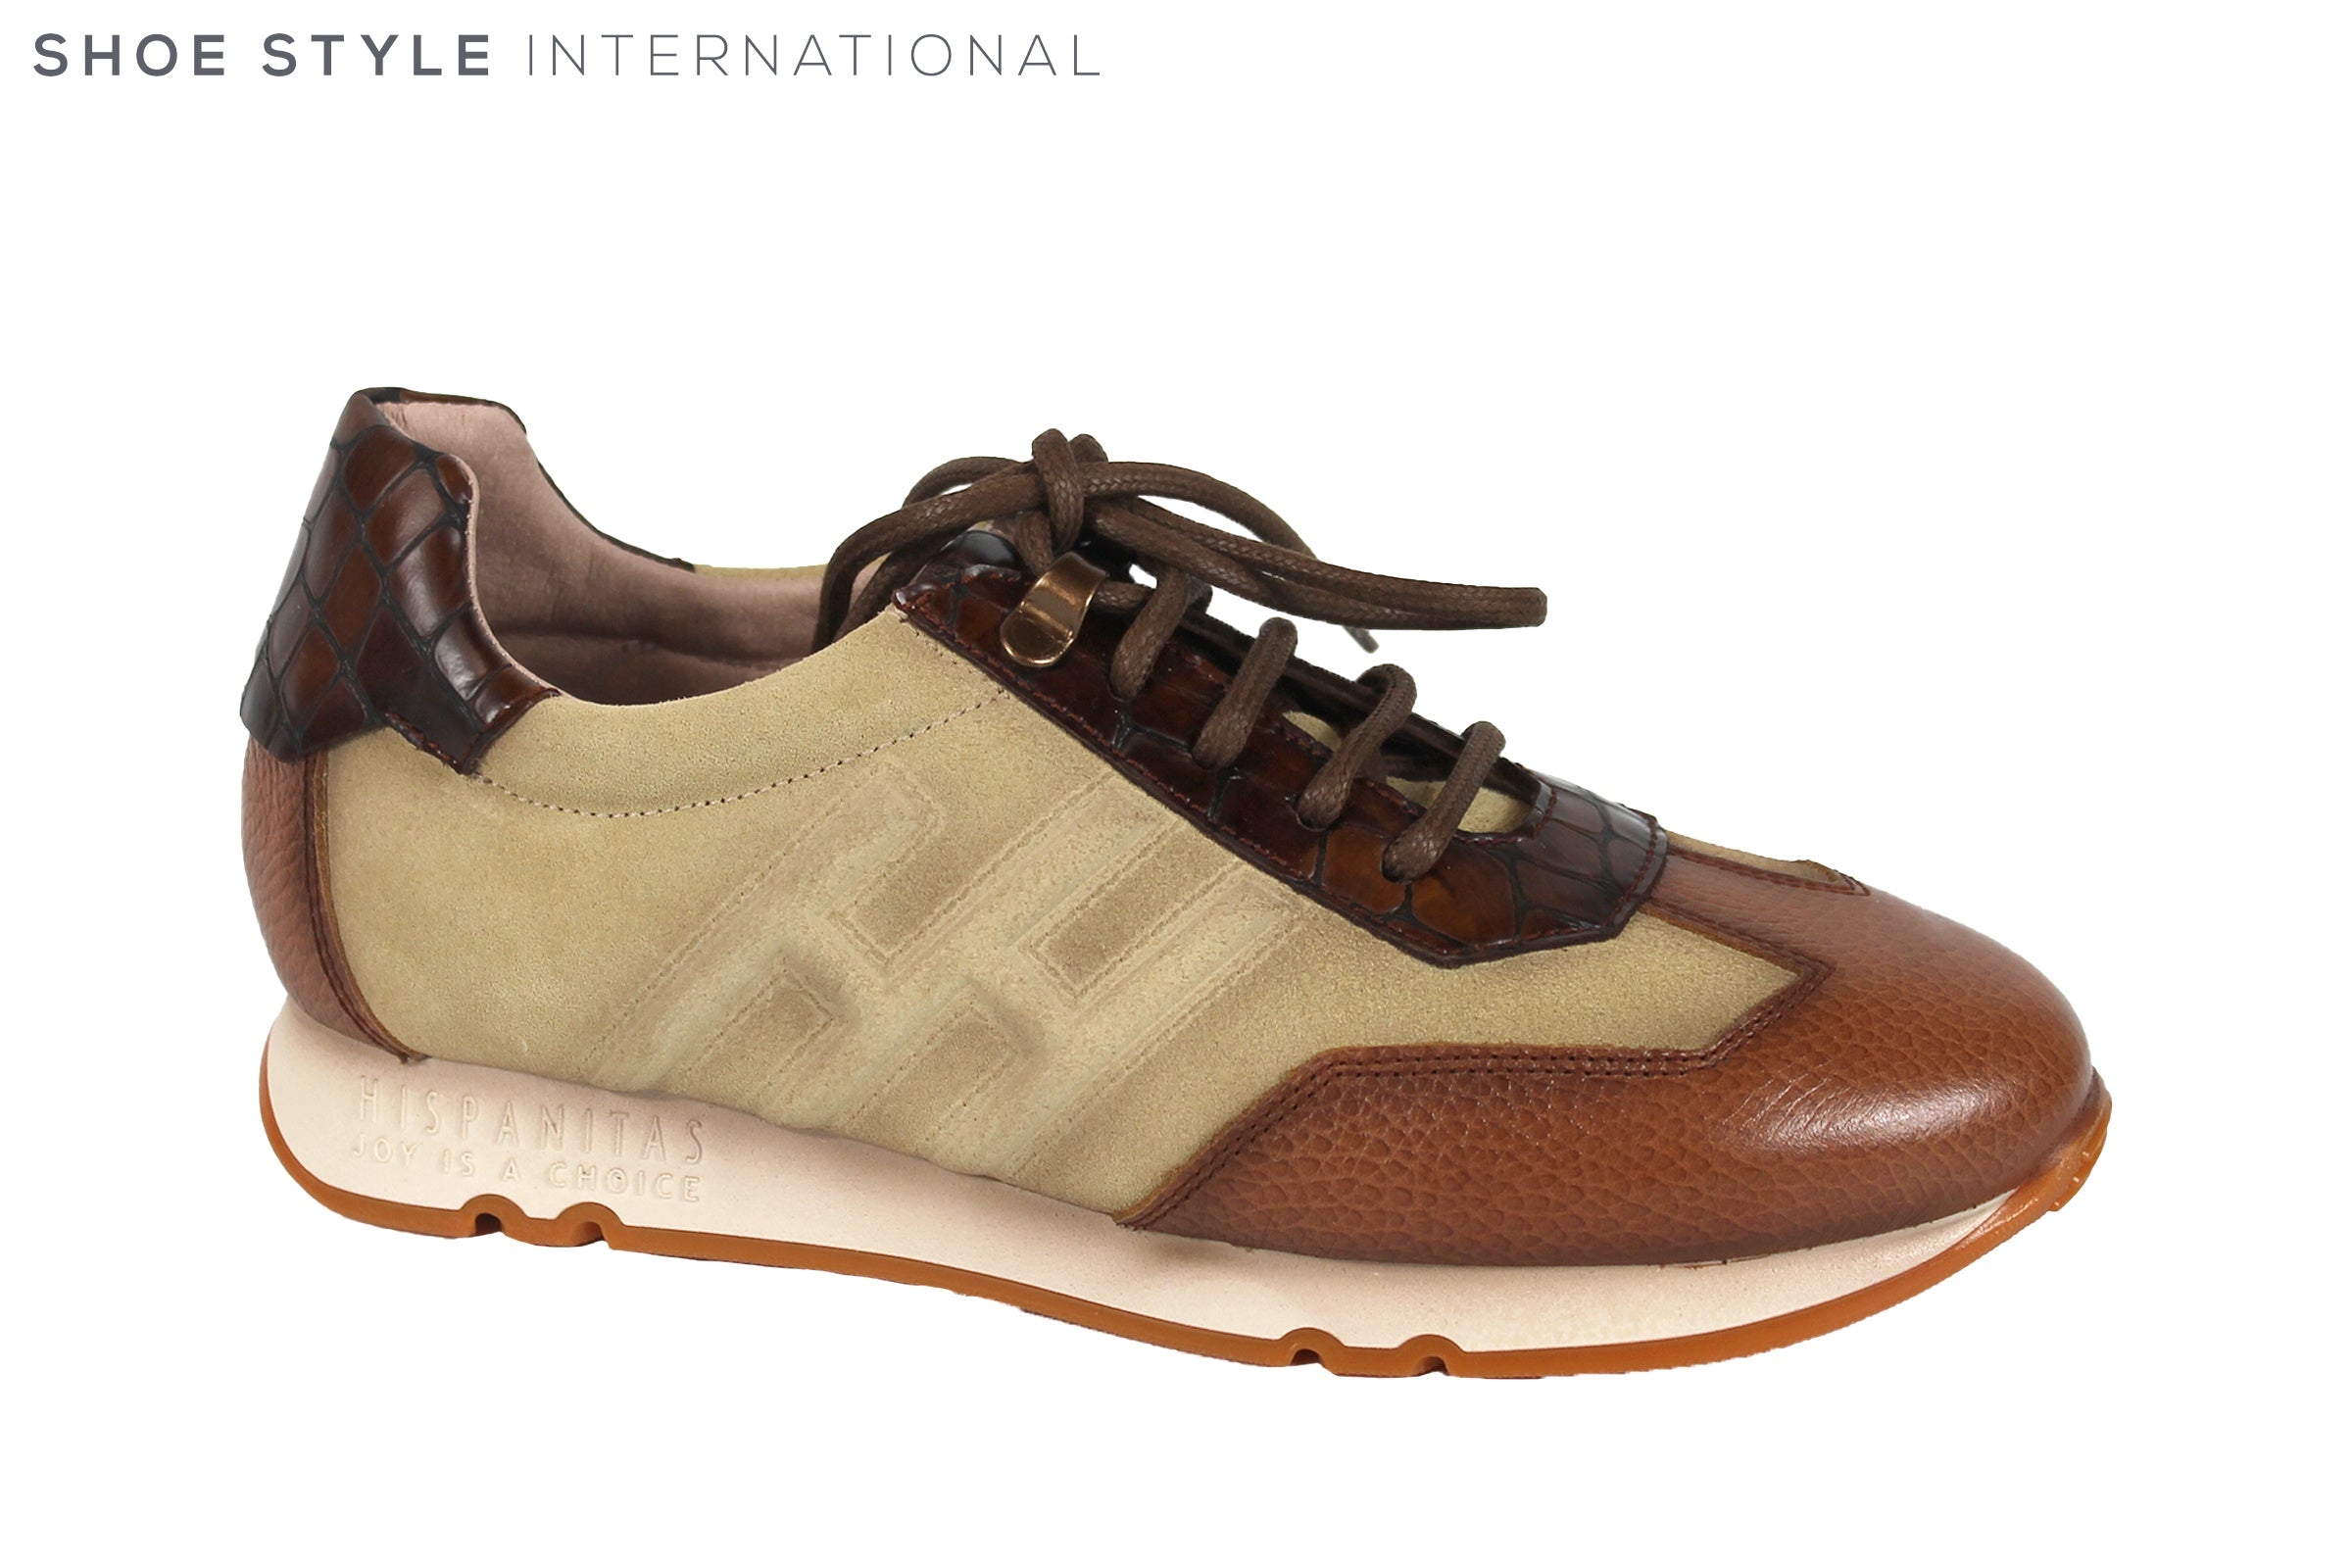 Hispanitas 211681 Shoe Style International